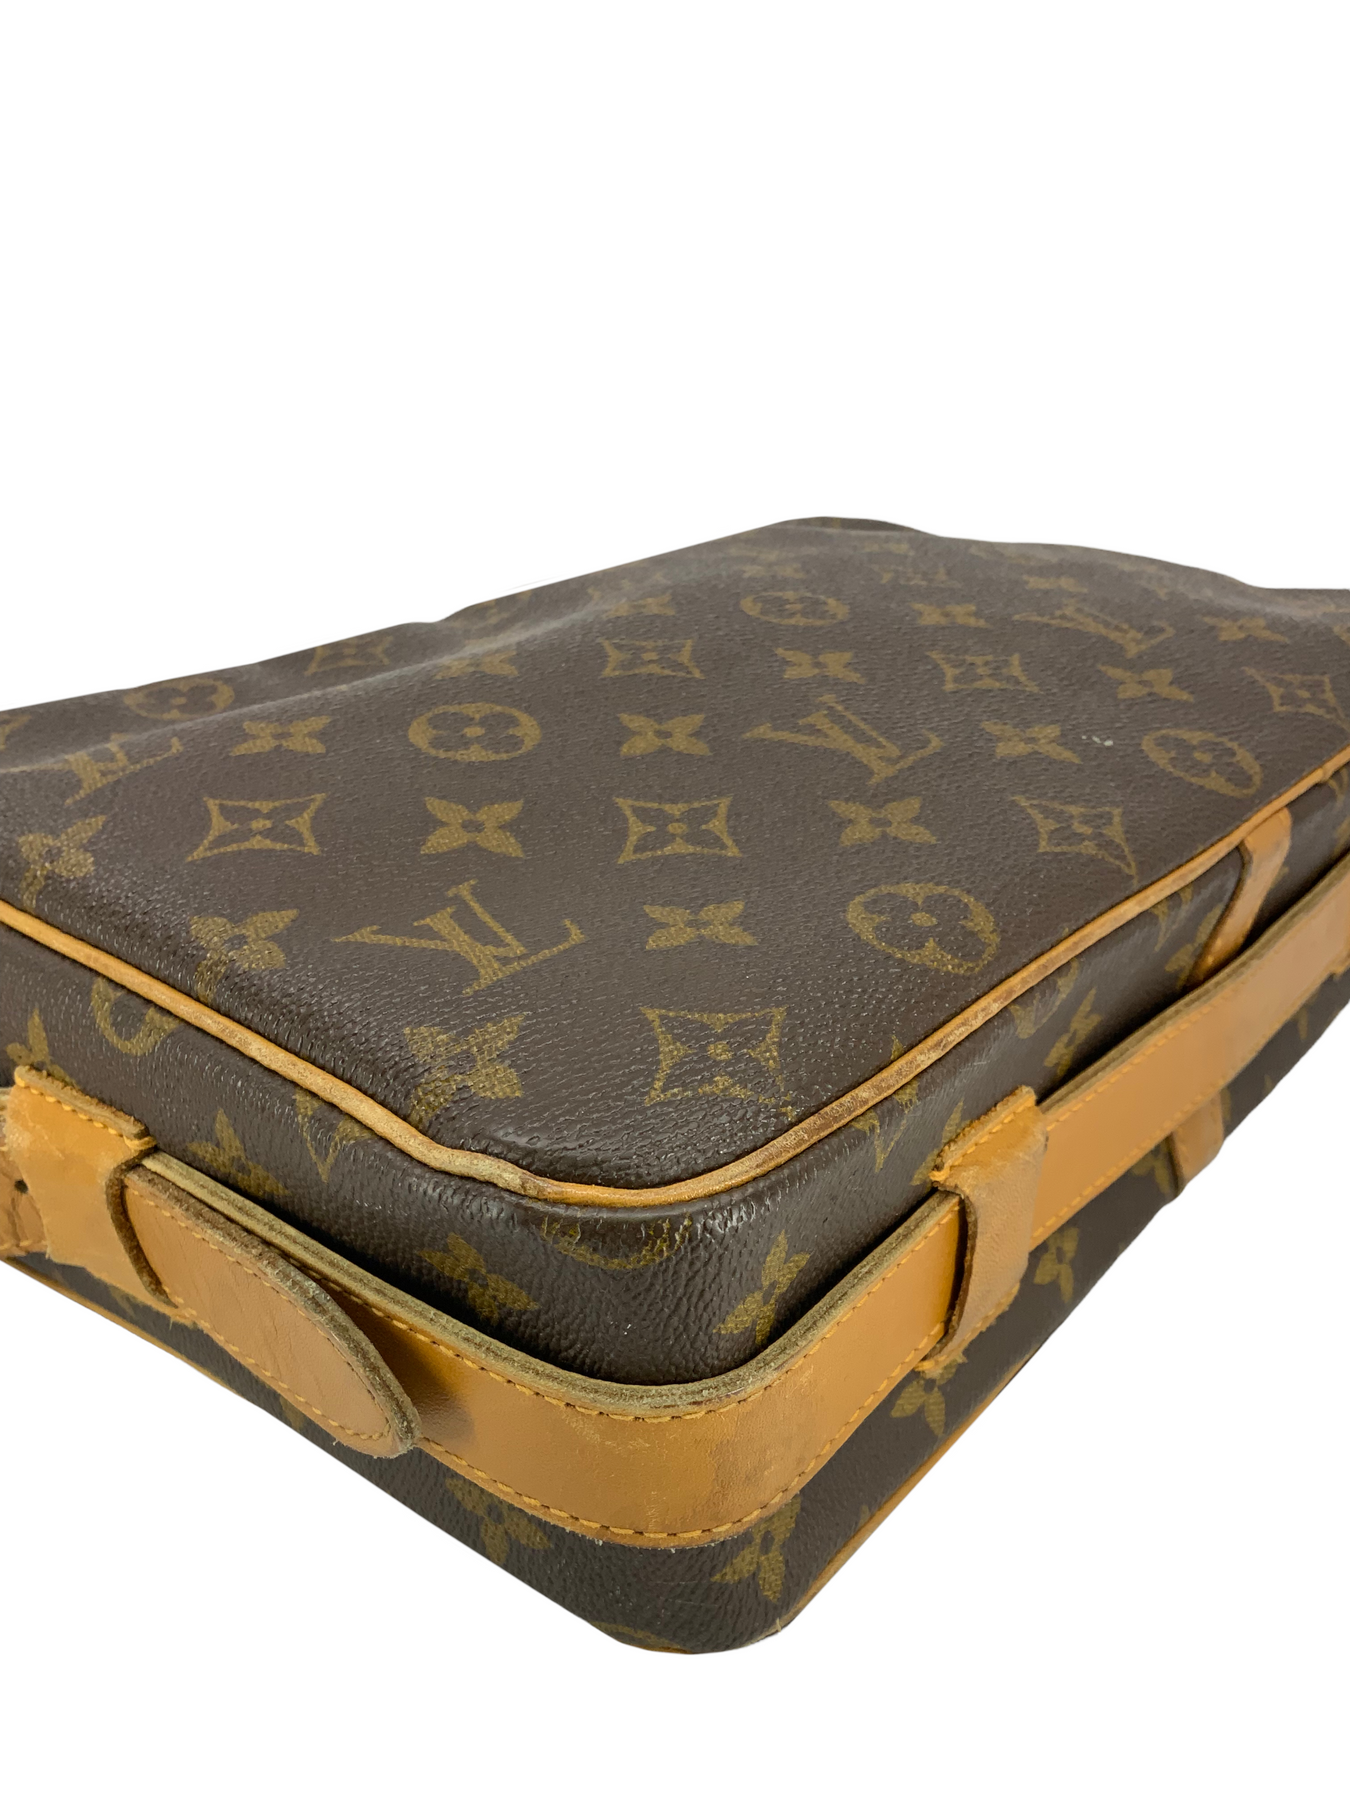 LOUIS VUITTON Monogram Sac Bandouliere Shoulder Bag Vintage M51362 Auth  ti1030